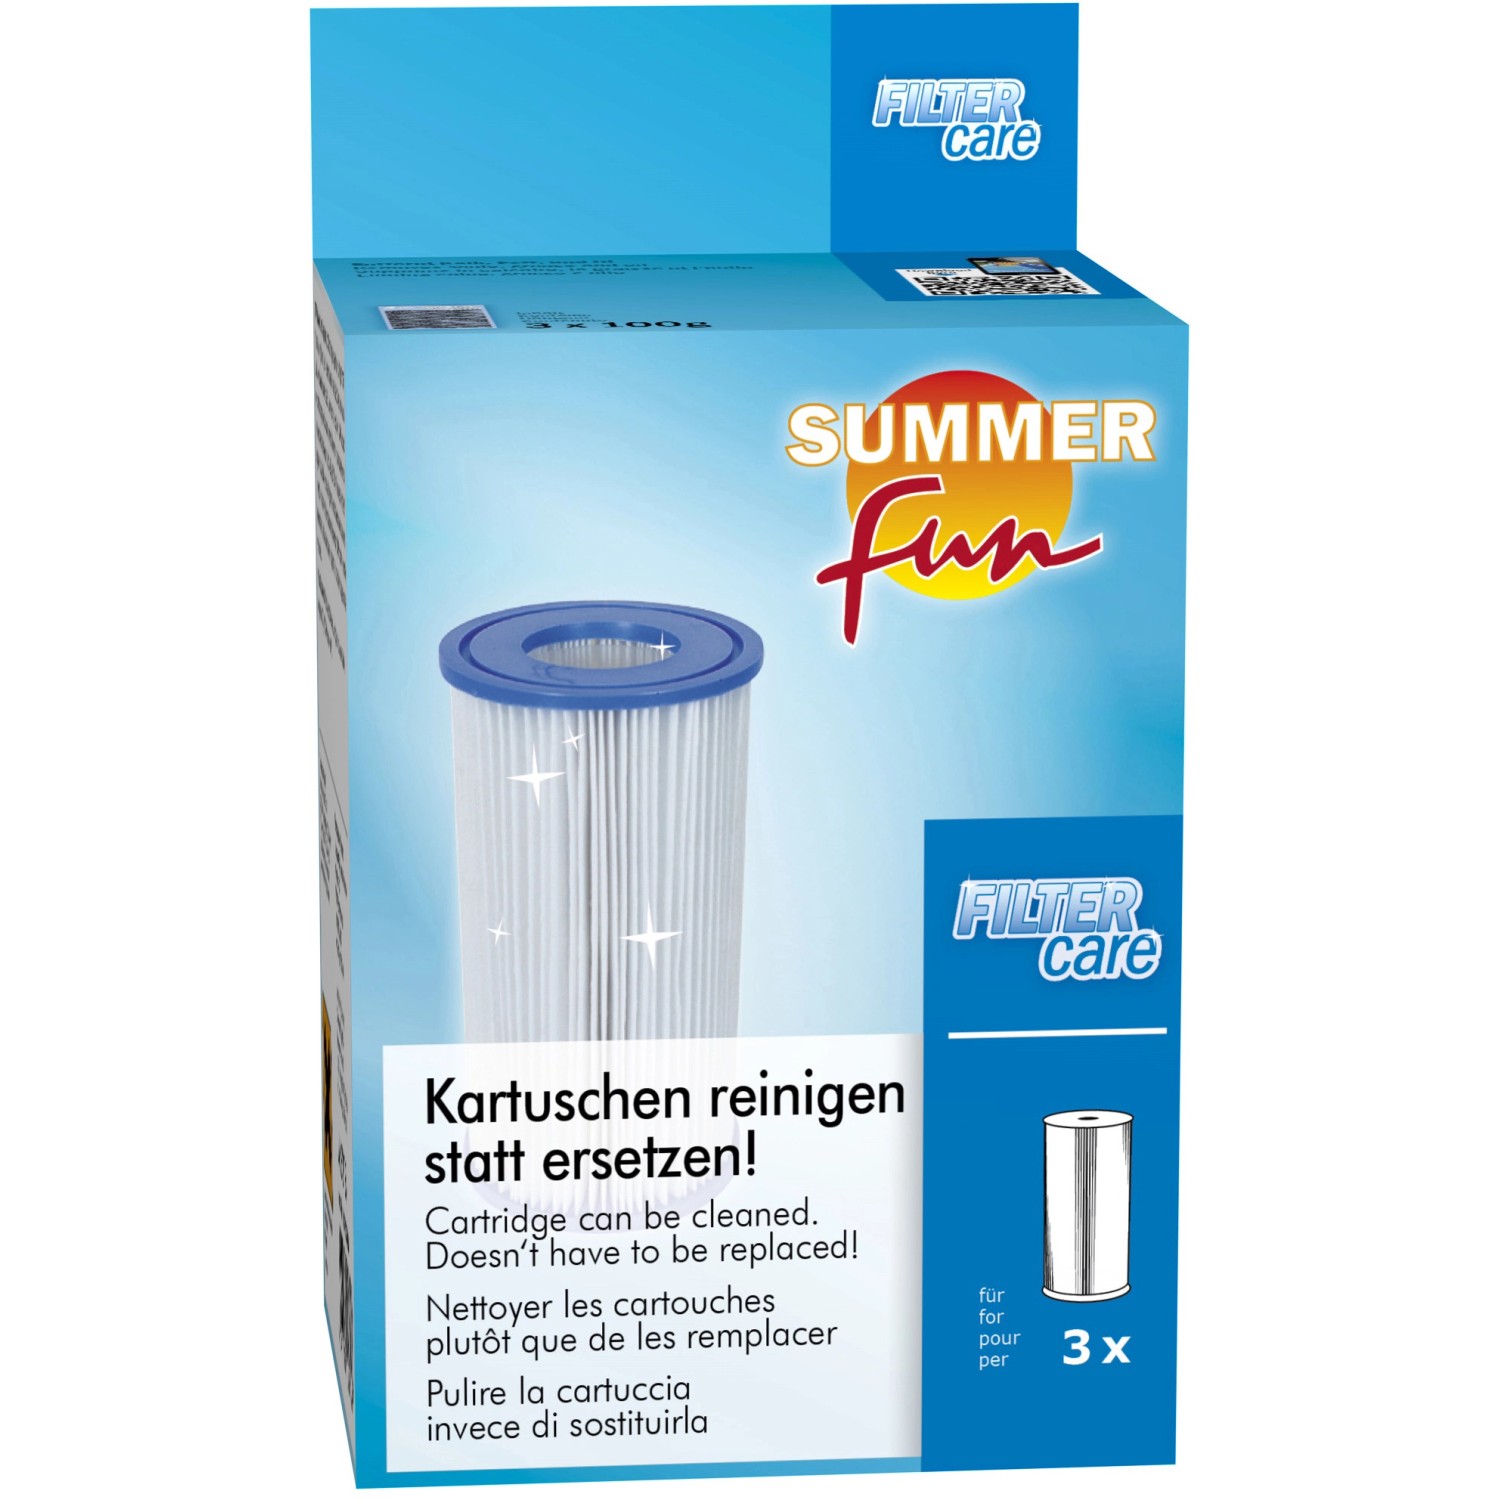 Summer Fun Kartuschen-Reiniger Filter Care von Summer Fun